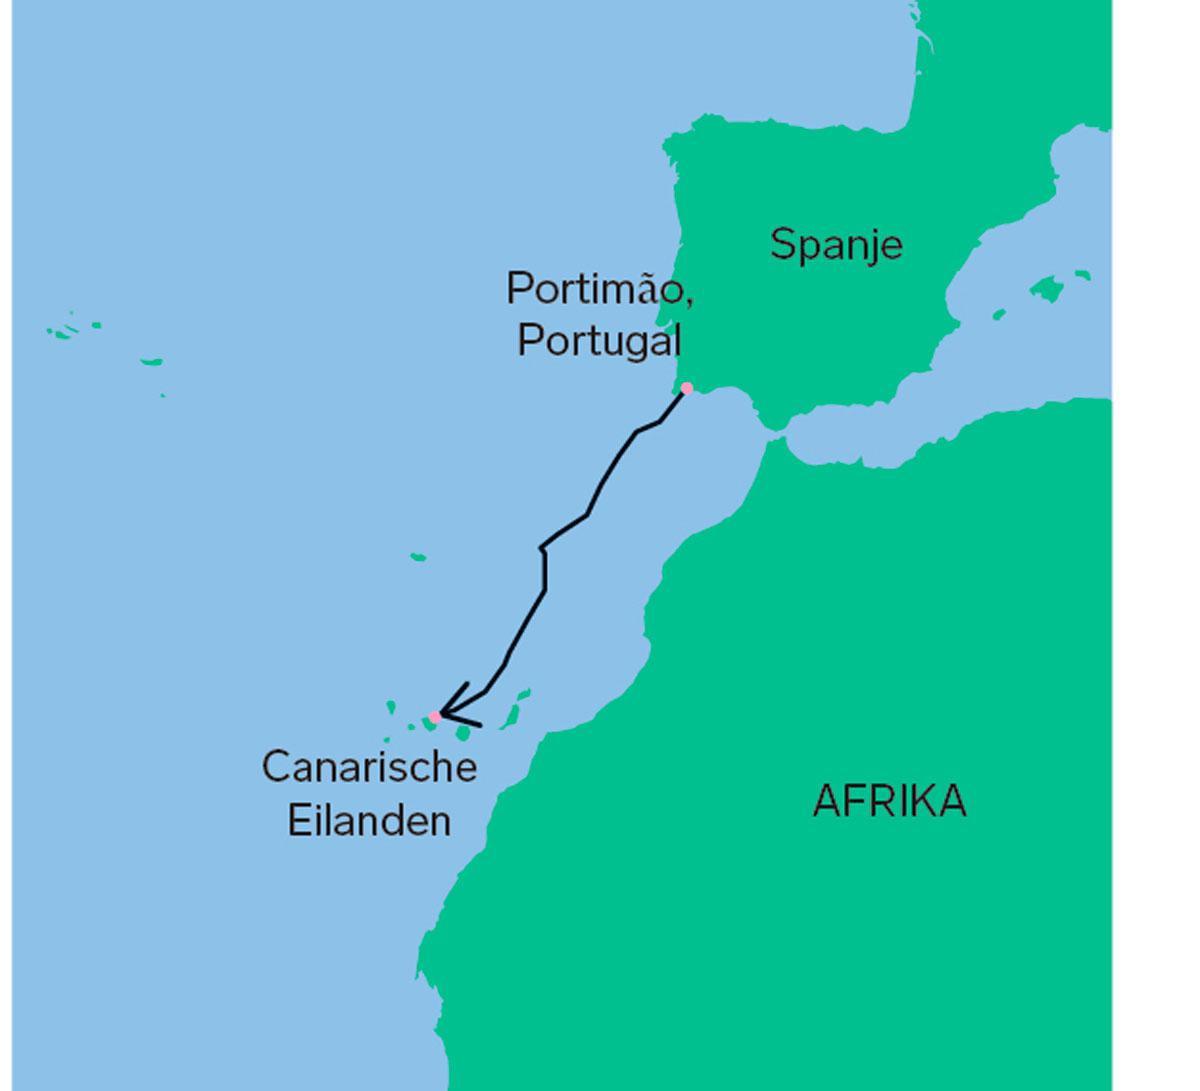 In 16 dagen werd een traject afgelegd van 1500 km (800 zeemijl) van Portimão tot Tenerife.